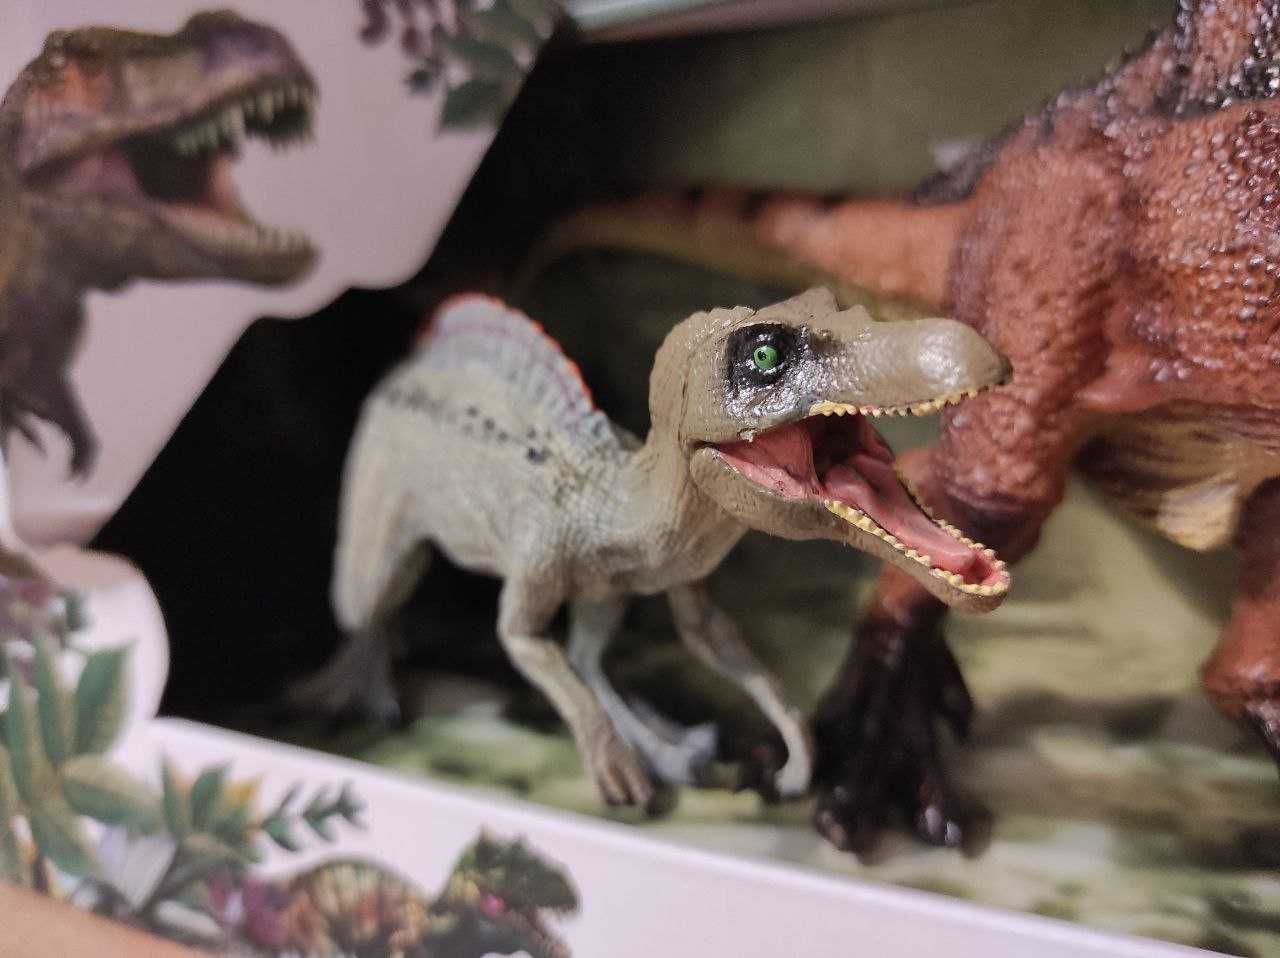 Набор хищные динозавры (Акрокантозавр, Криолофозавр, Спинозавр)